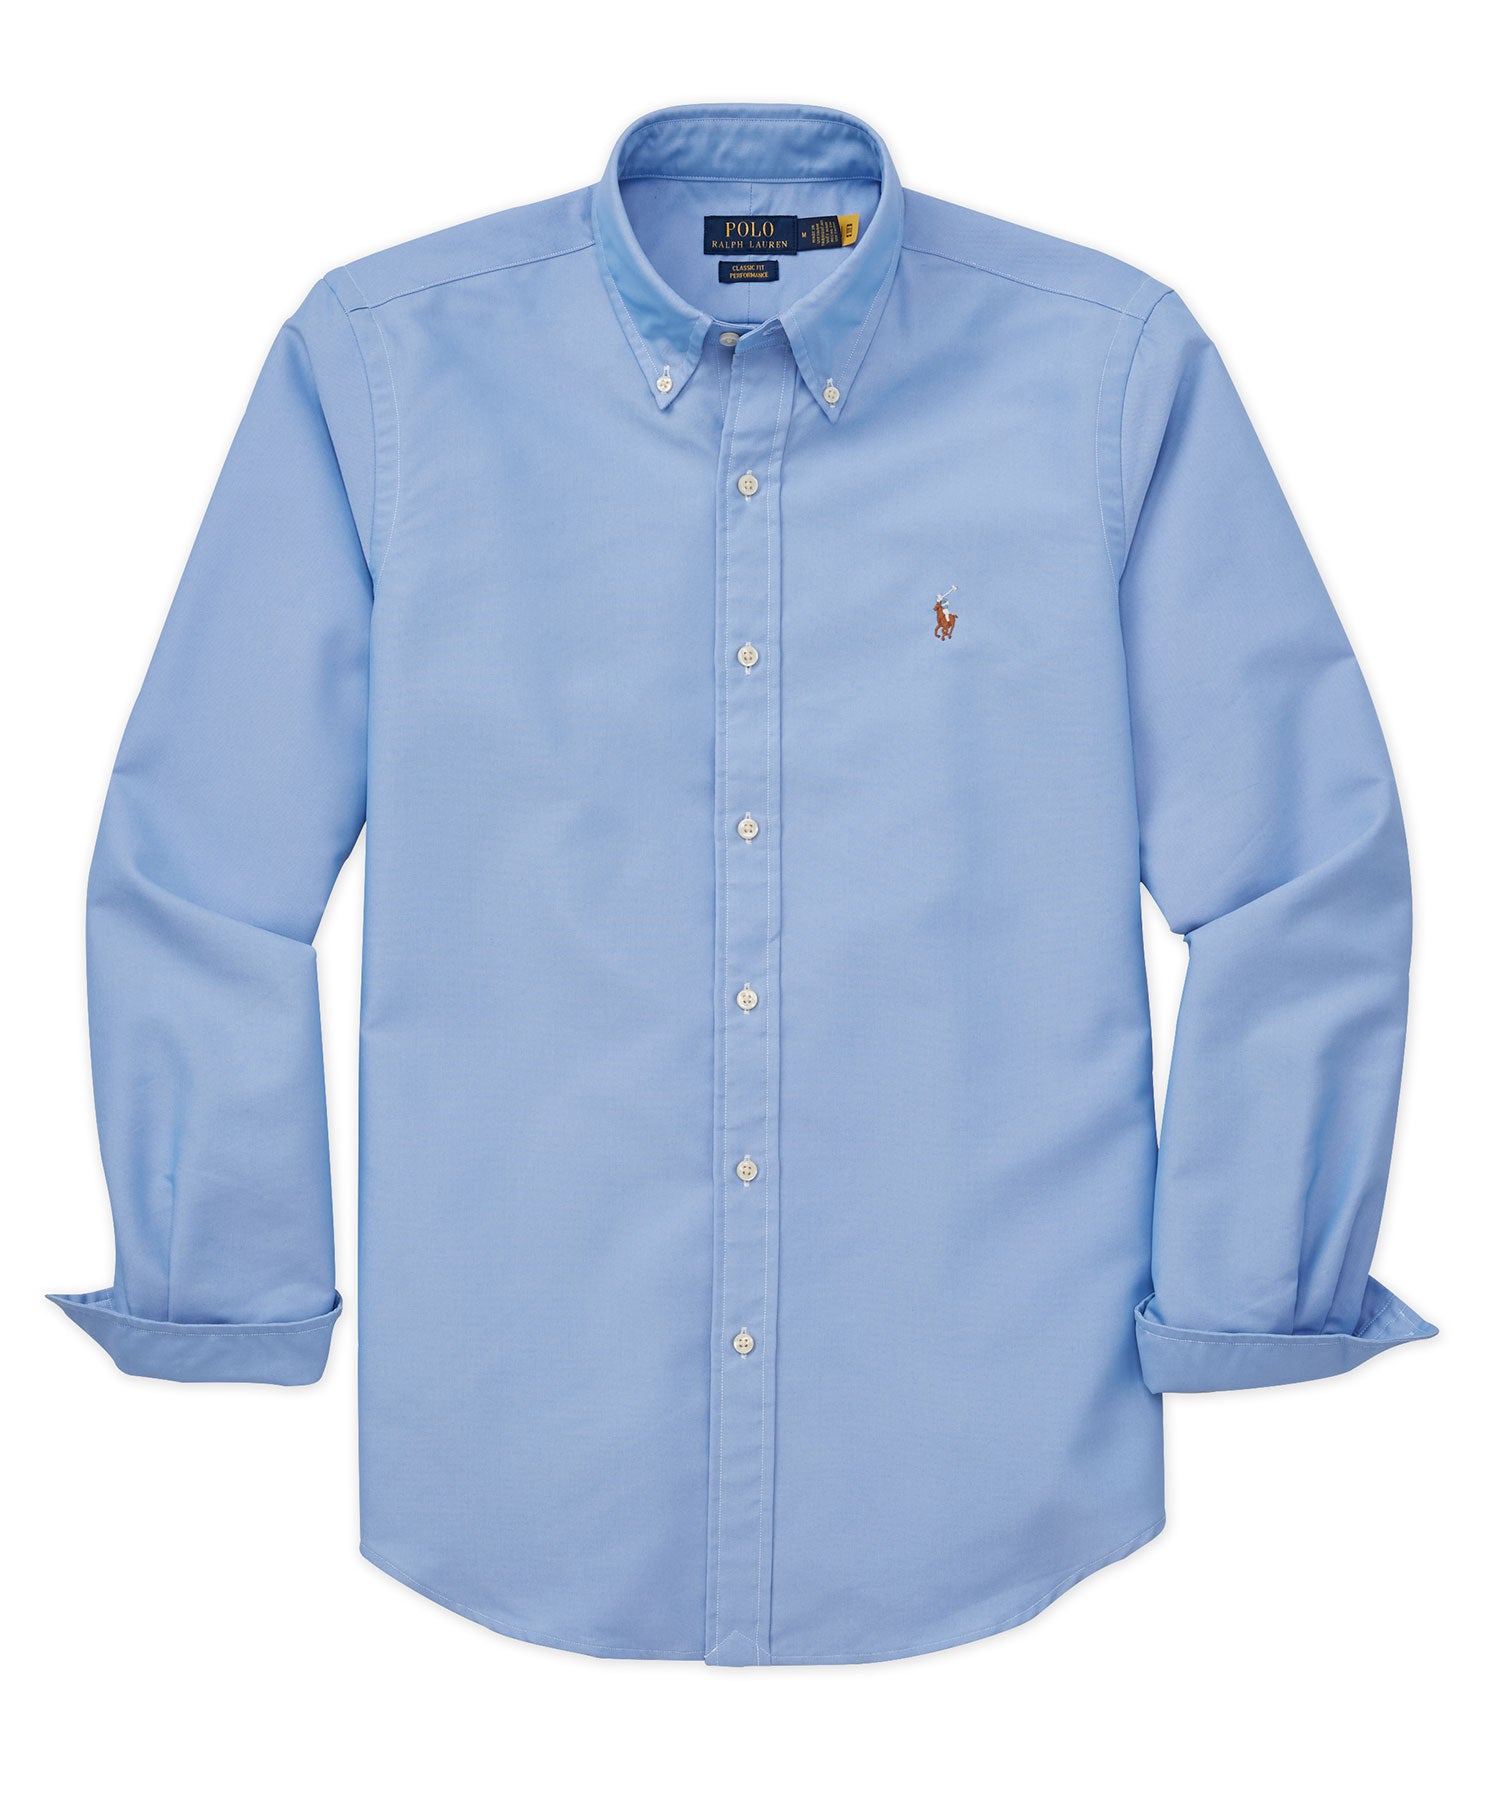 Polo Ralph Lauren Men's Custom Slim Fit Polo Shirt - Teak